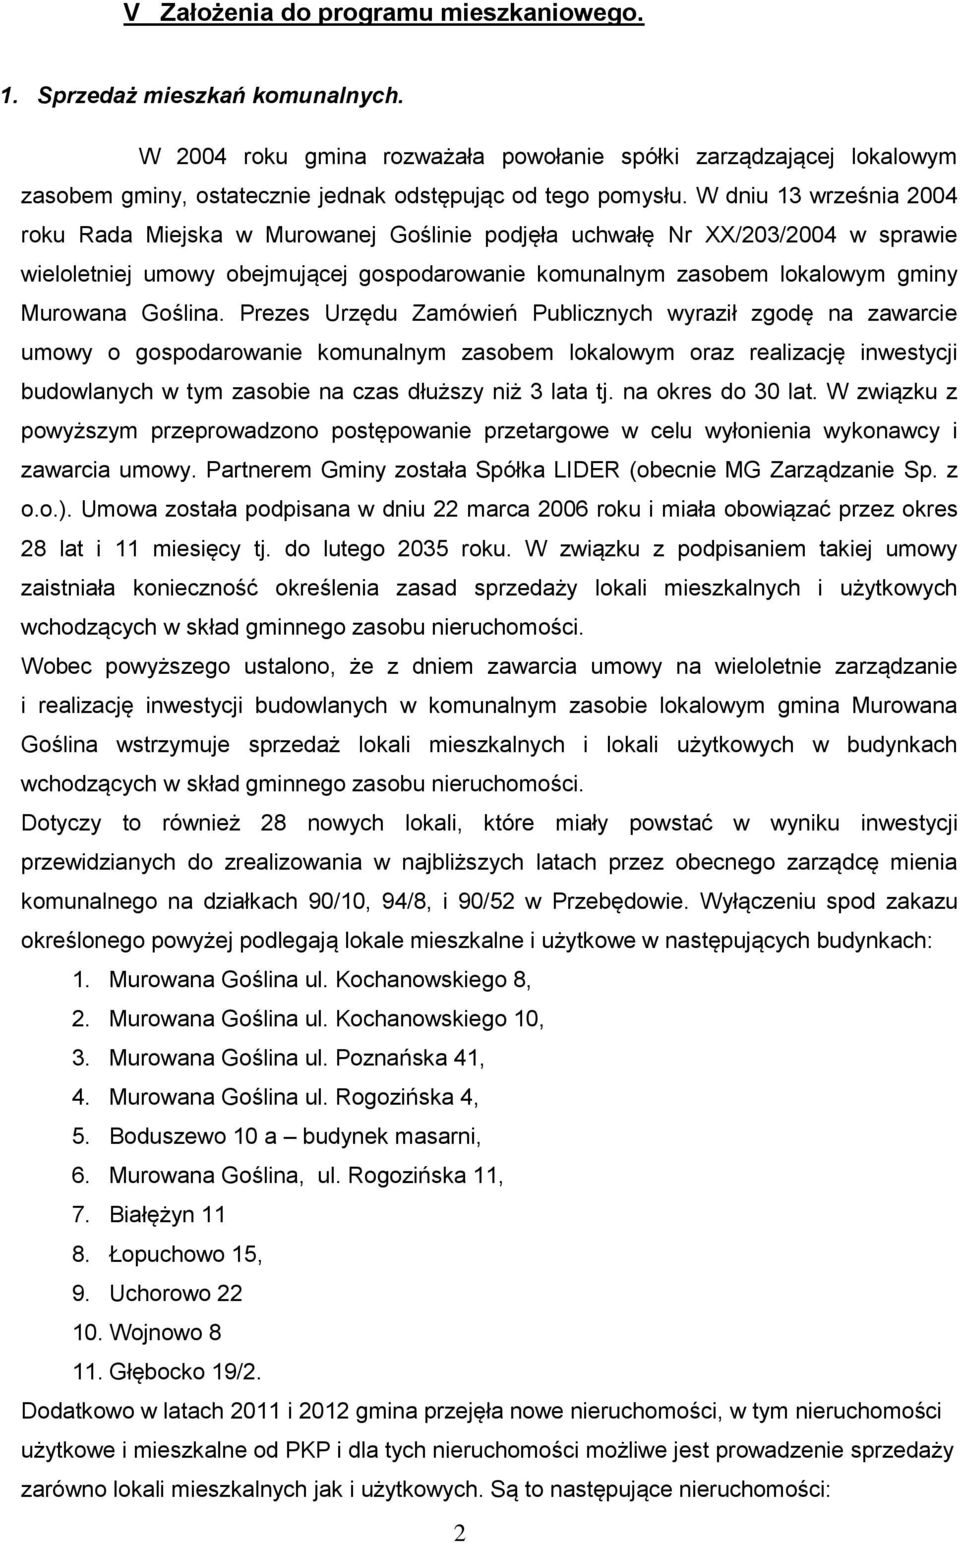 W dniu 13 września 2004 roku Rada Miejska w Murowanej Goślinie podjęła uchwałę Nr XX/203/2004 w sprawie wieloletniej umowy obejmującej gospodarowanie komunalnym zasobem lokalowym gminy Murowana